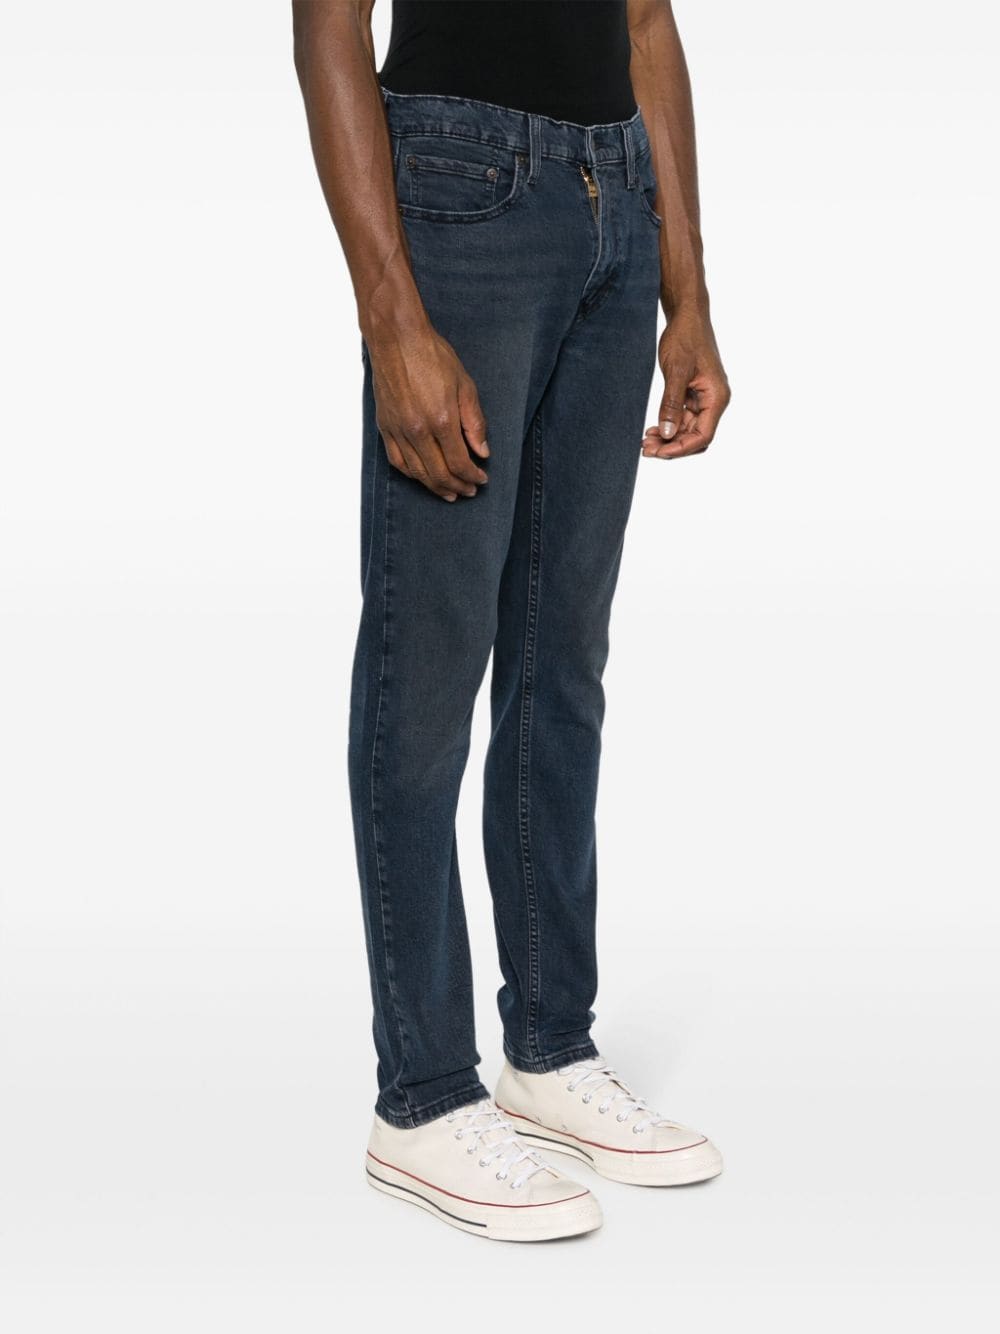 Low-rise slim-cut jeans